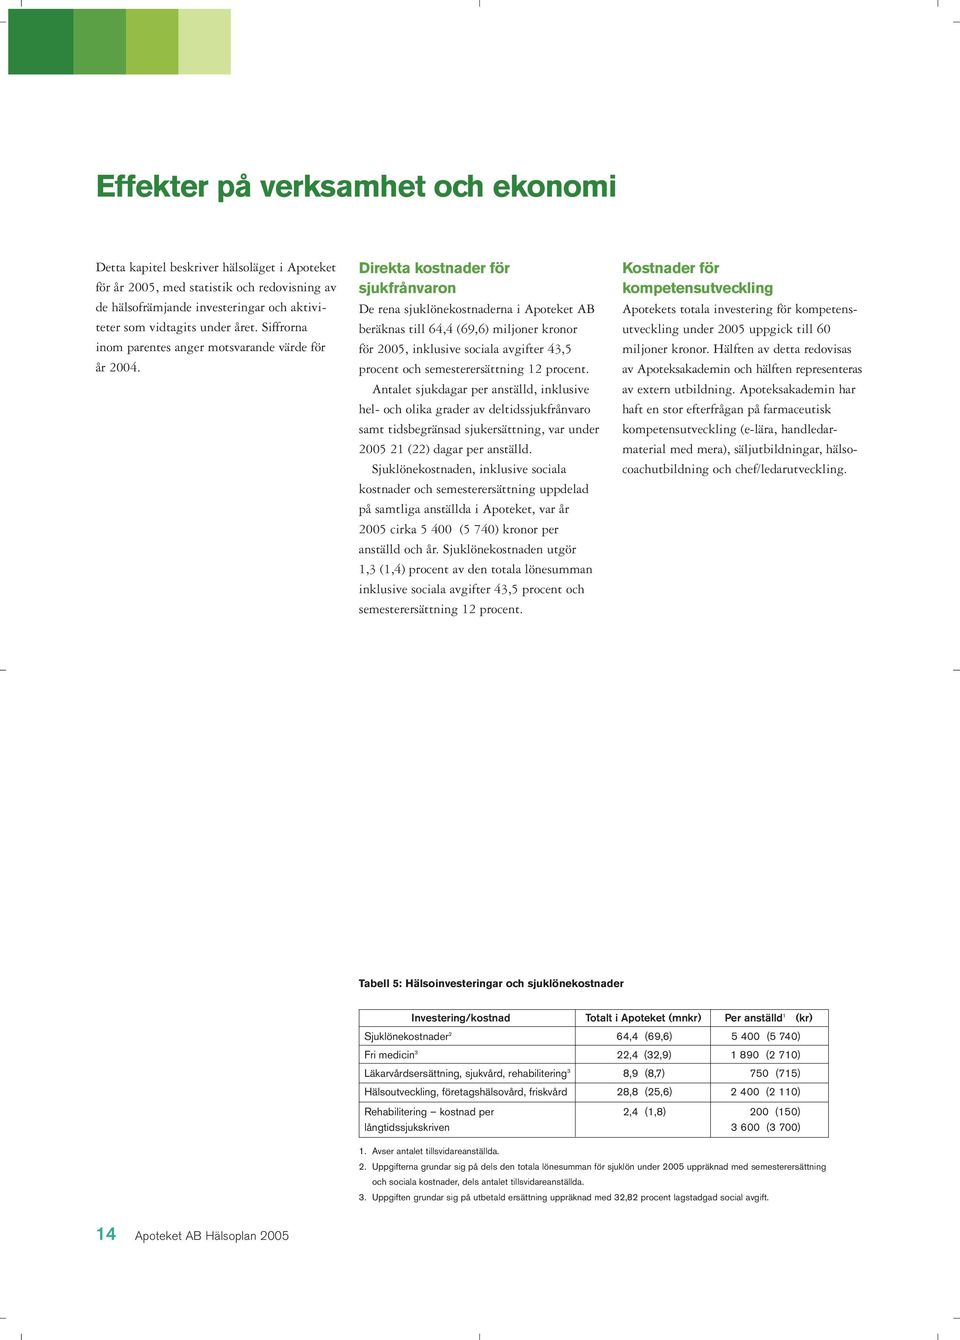 Direkta kostnader för sjukfrånvaron De rena sjuklönekostnaderna i Apoteket AB beräknas till 64,4 (69,6) miljoner kronor för 2005, inklusive sociala avgifter 43,5 procent och semesterersättning 12